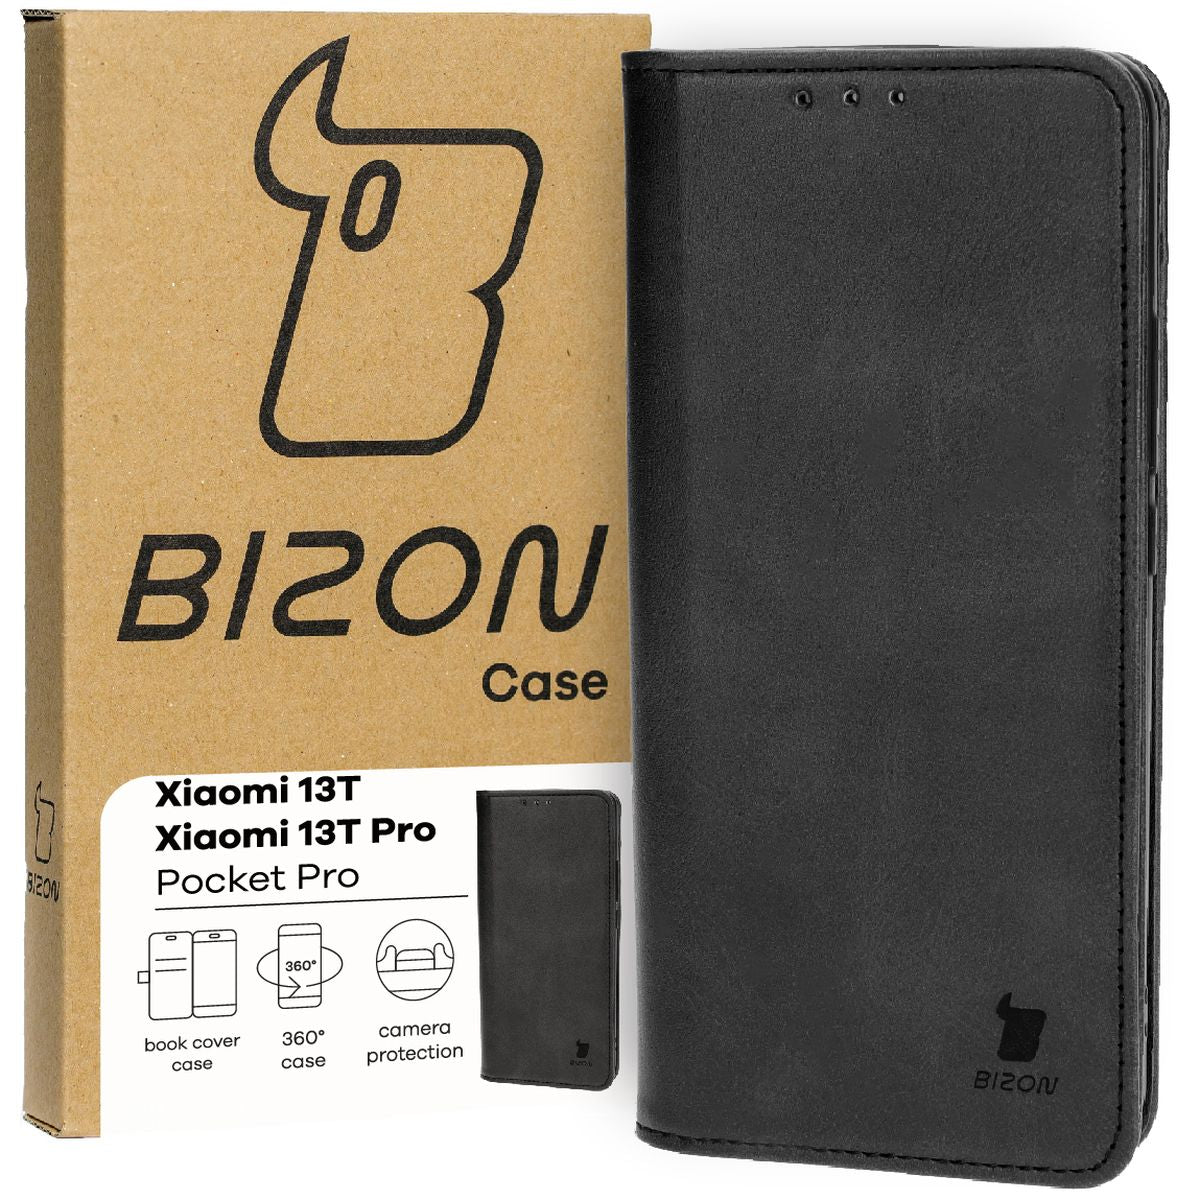 Schutzhülle für Xiaomi 13T / 13T Pro, Bizon Case Pocket Pro, Schwarz